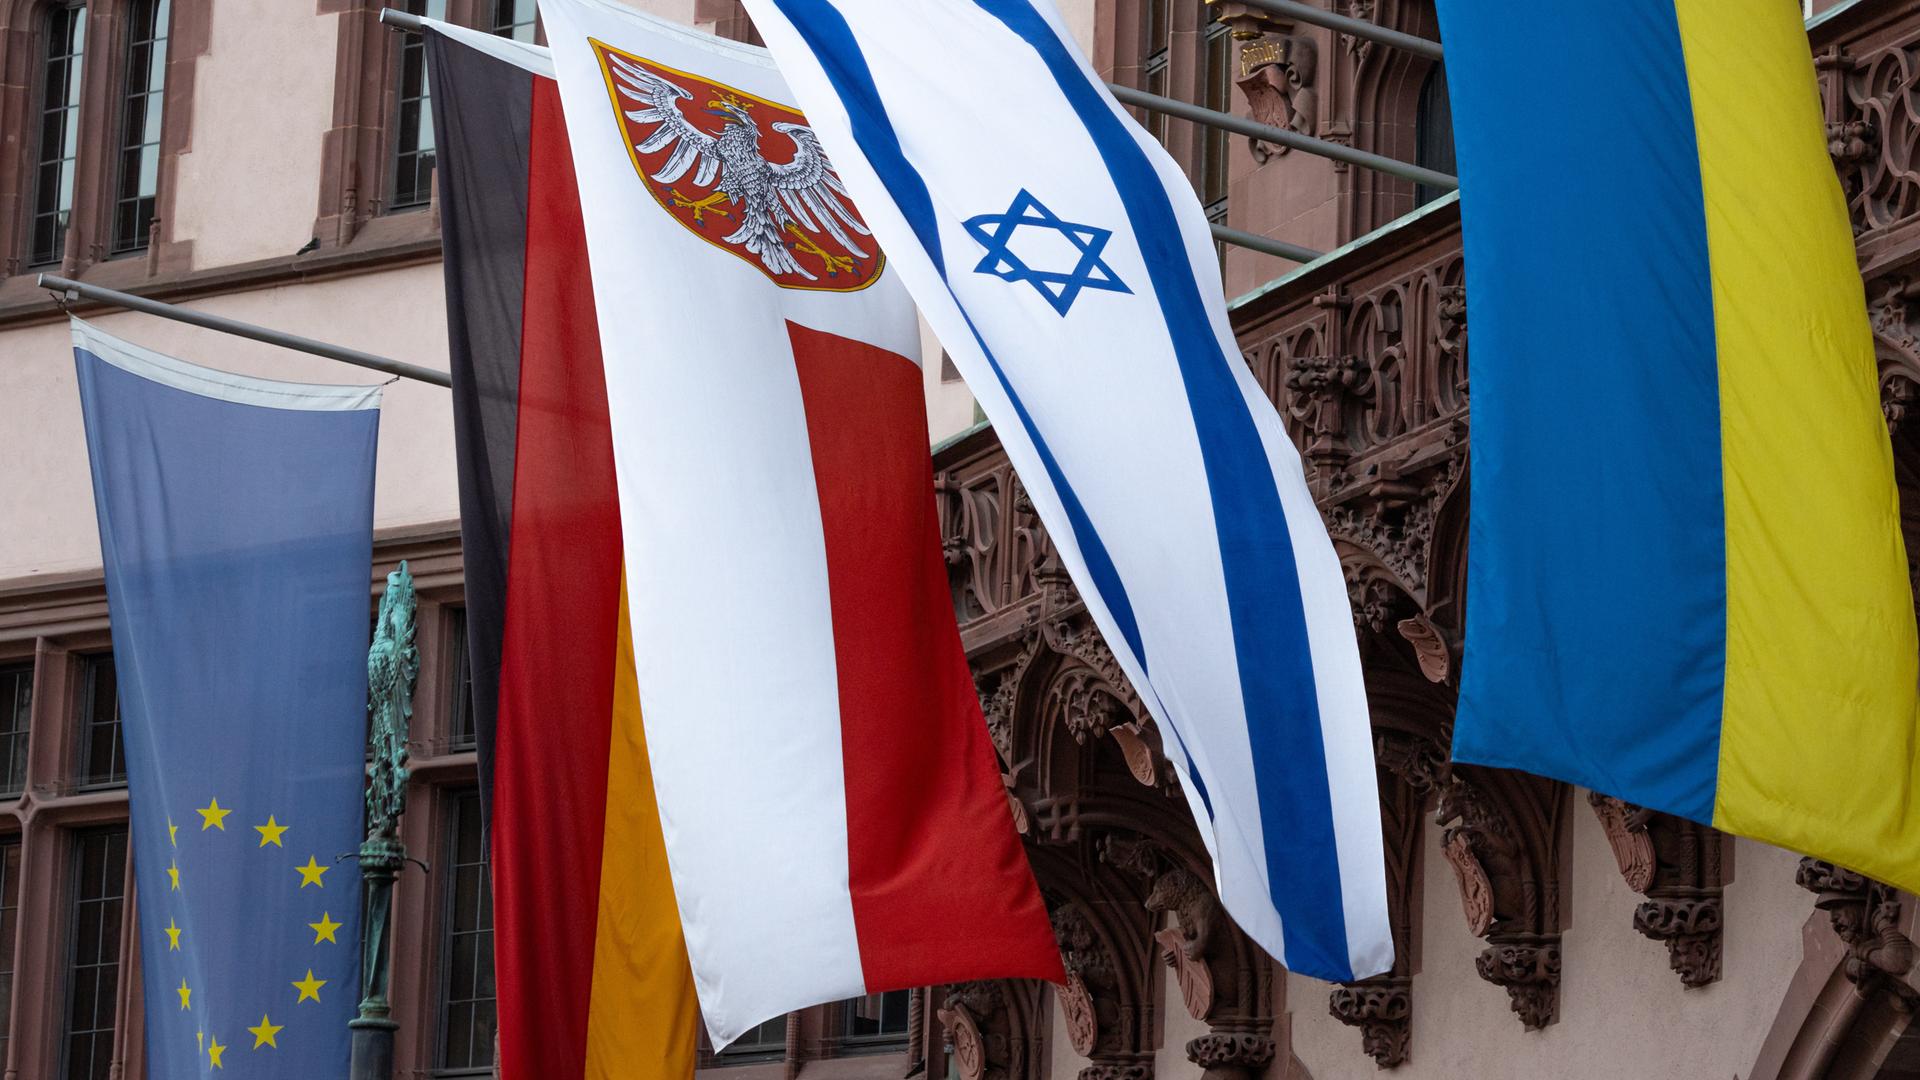 Drei Männer reißen Frau Israel-Fahne aus der Hand und treten 55